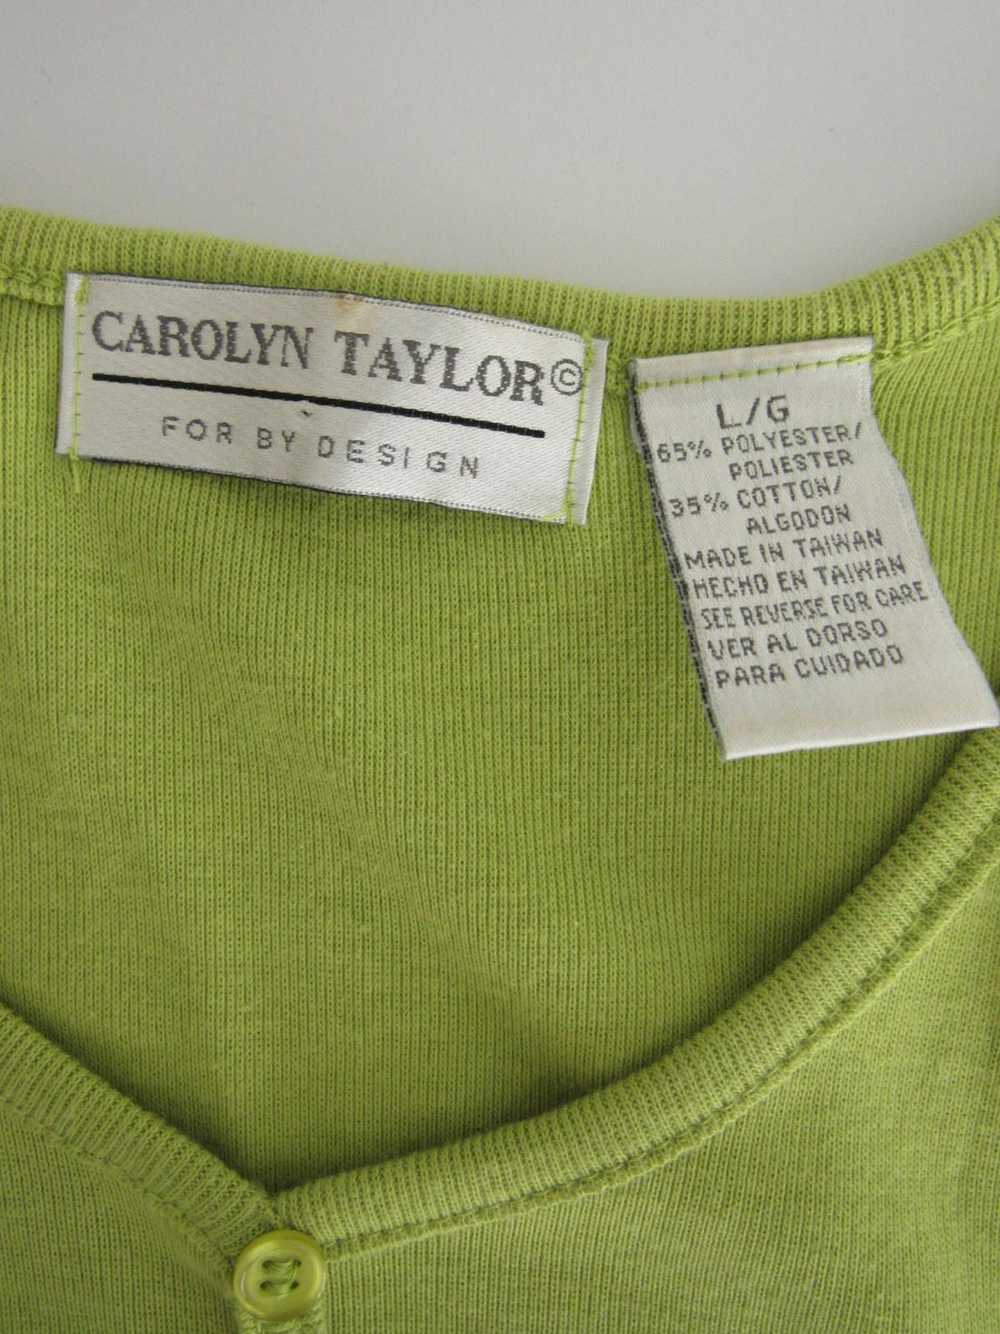 Carolyn Taylor Knit Top - image 3